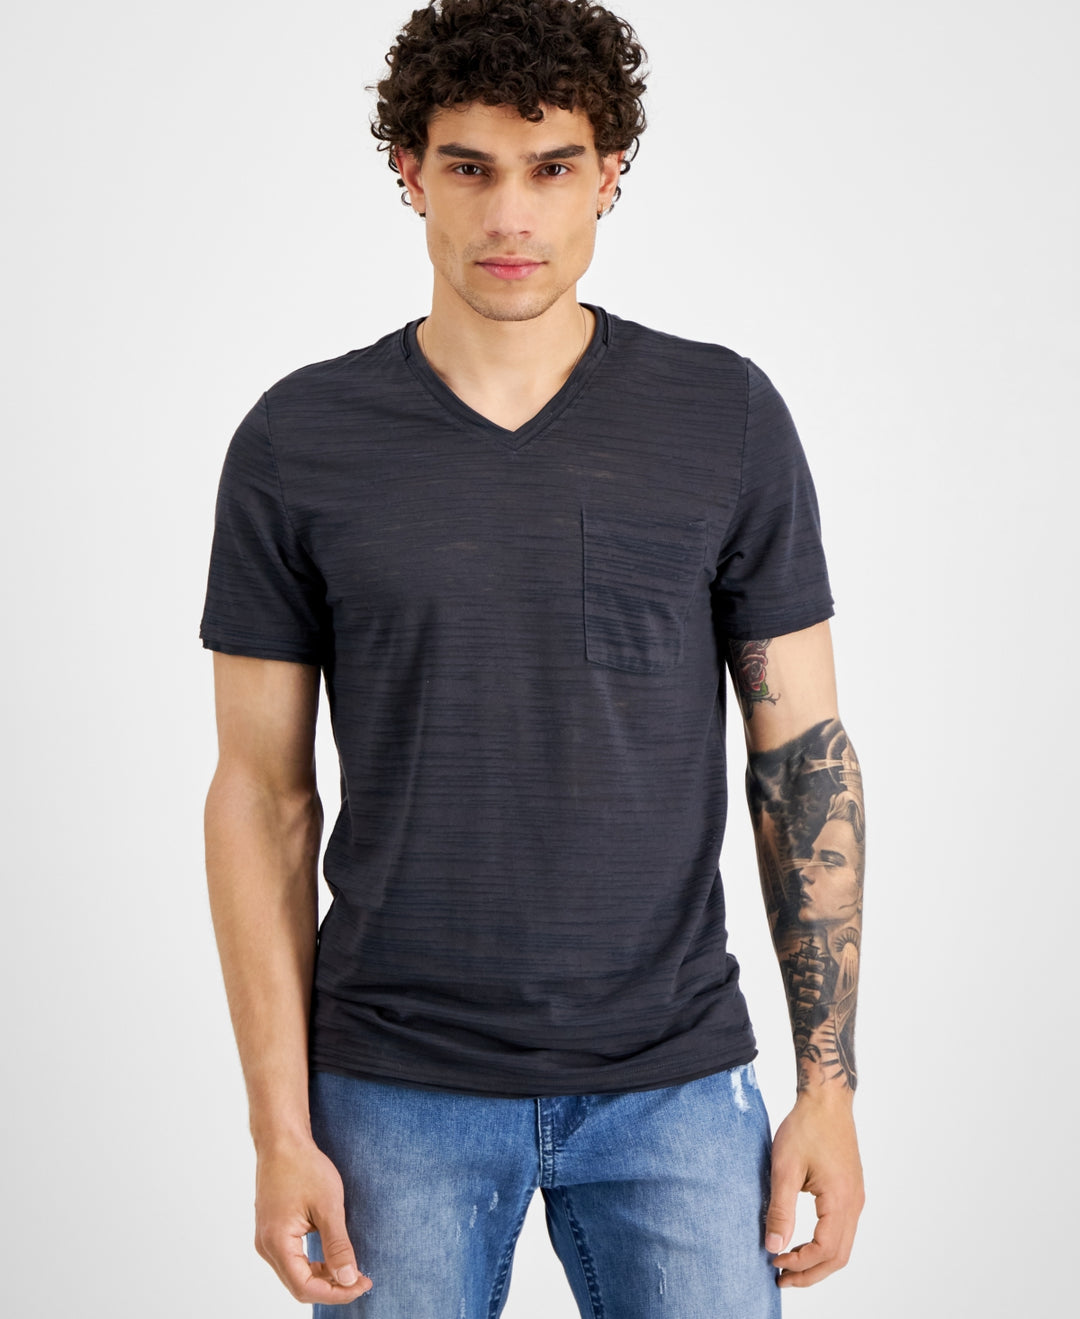 INC International Concepts Men's Burnout V Neck T-Shirt Blue Size X-Small